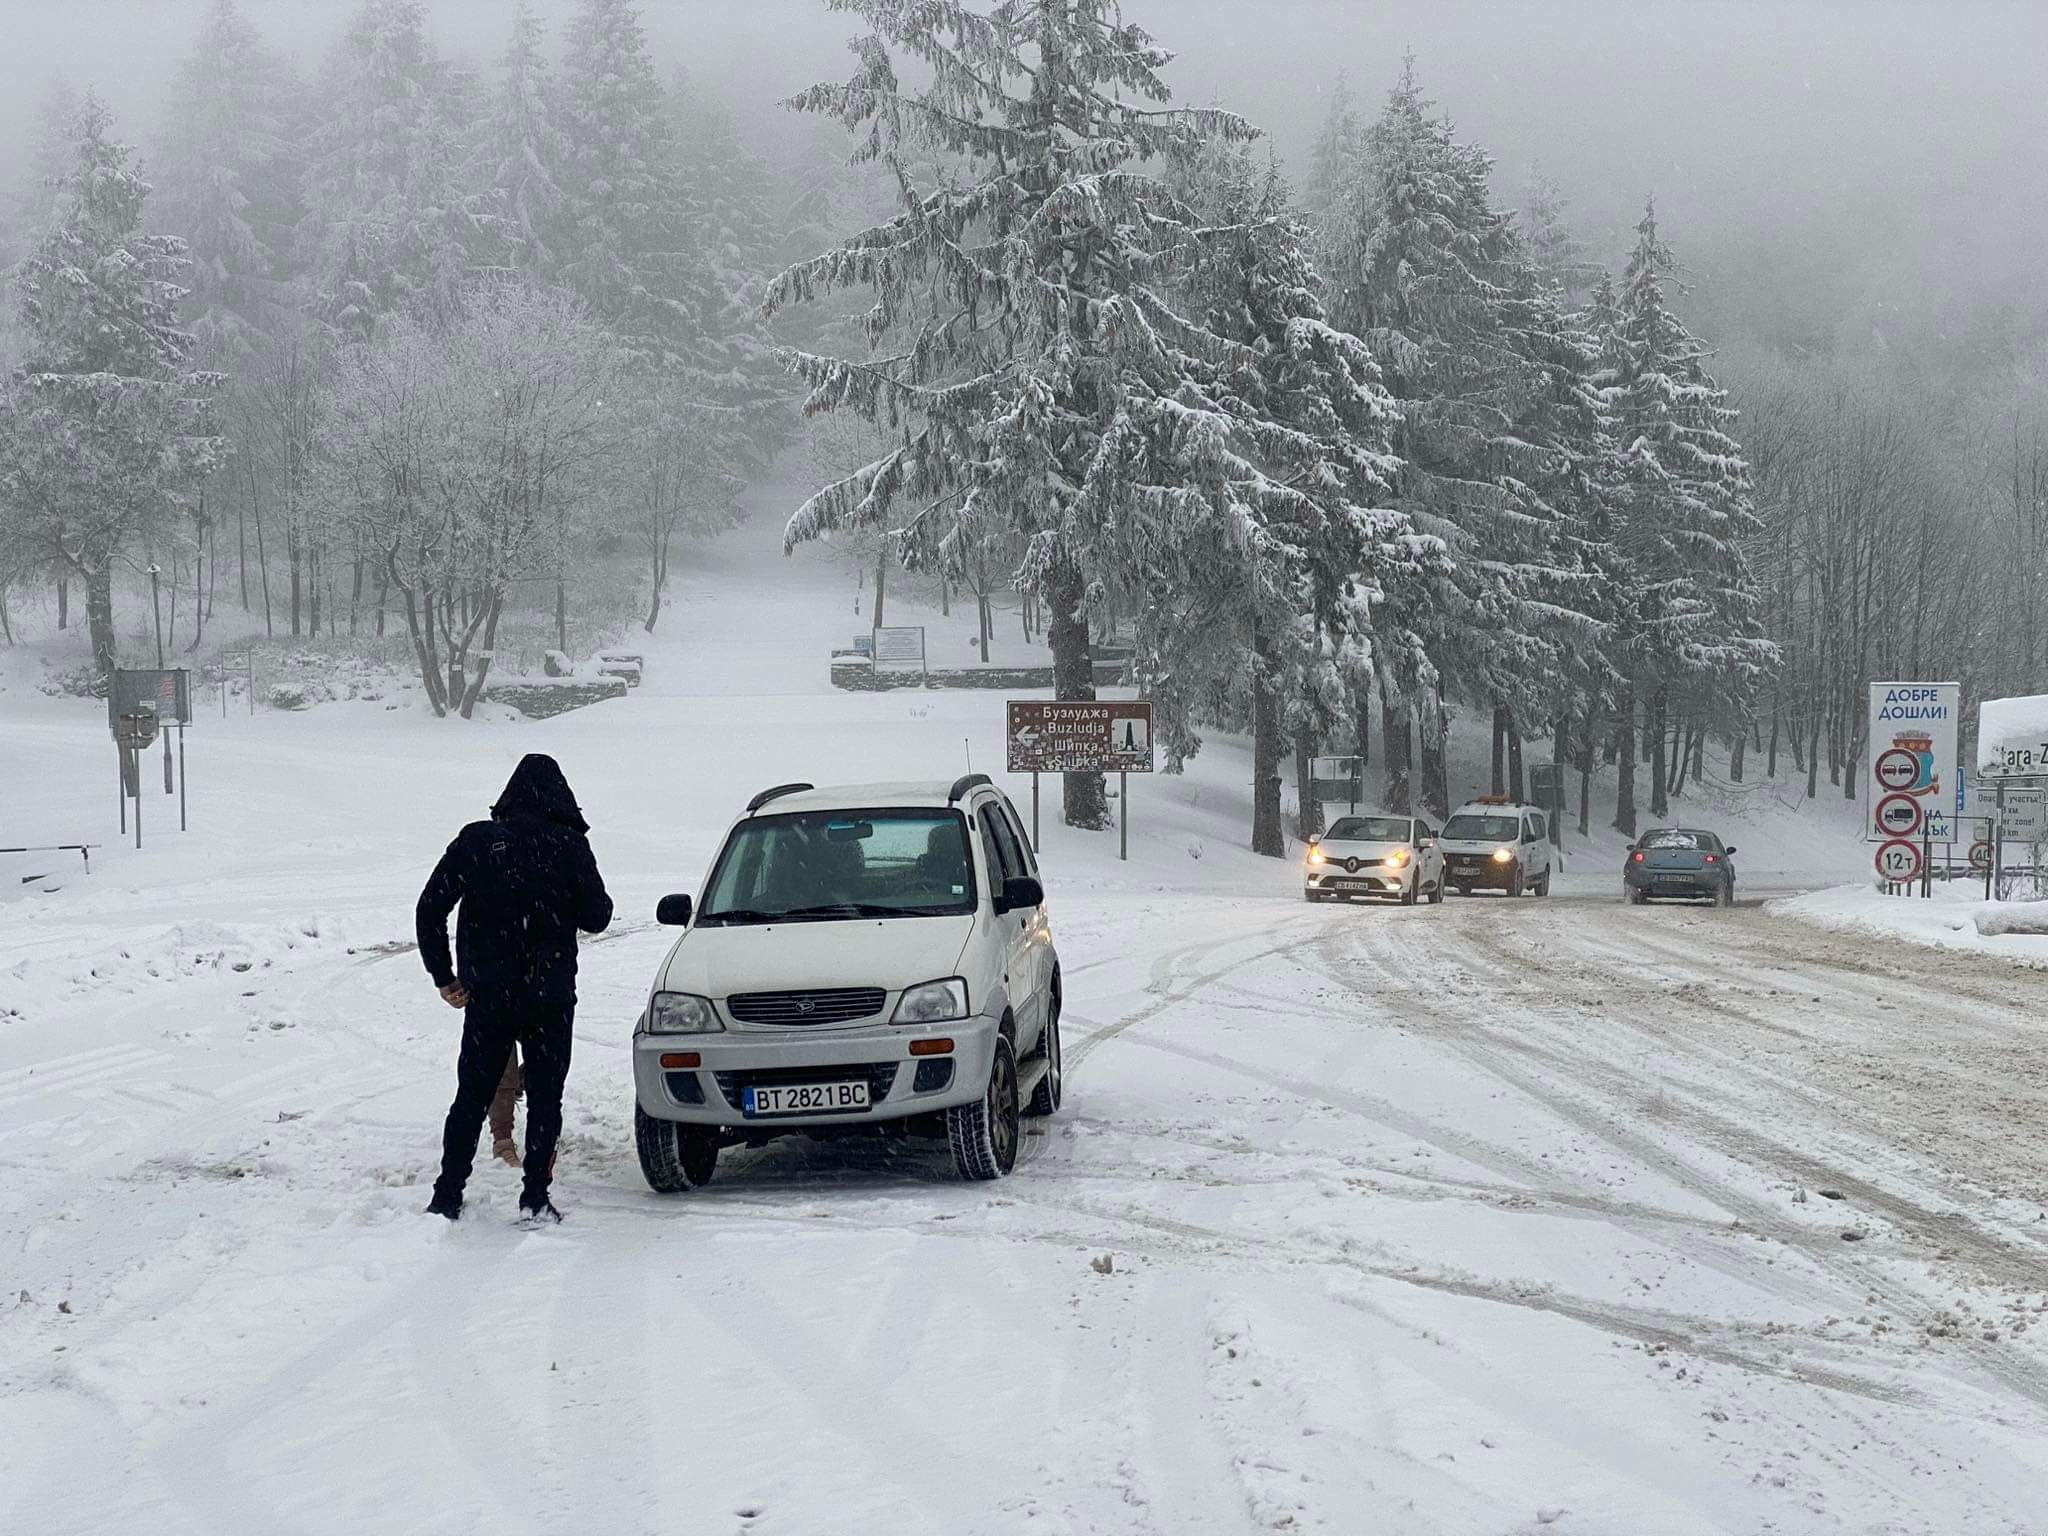 Ограничена видимост и снеговалеж през проходите Шипка и Република Има